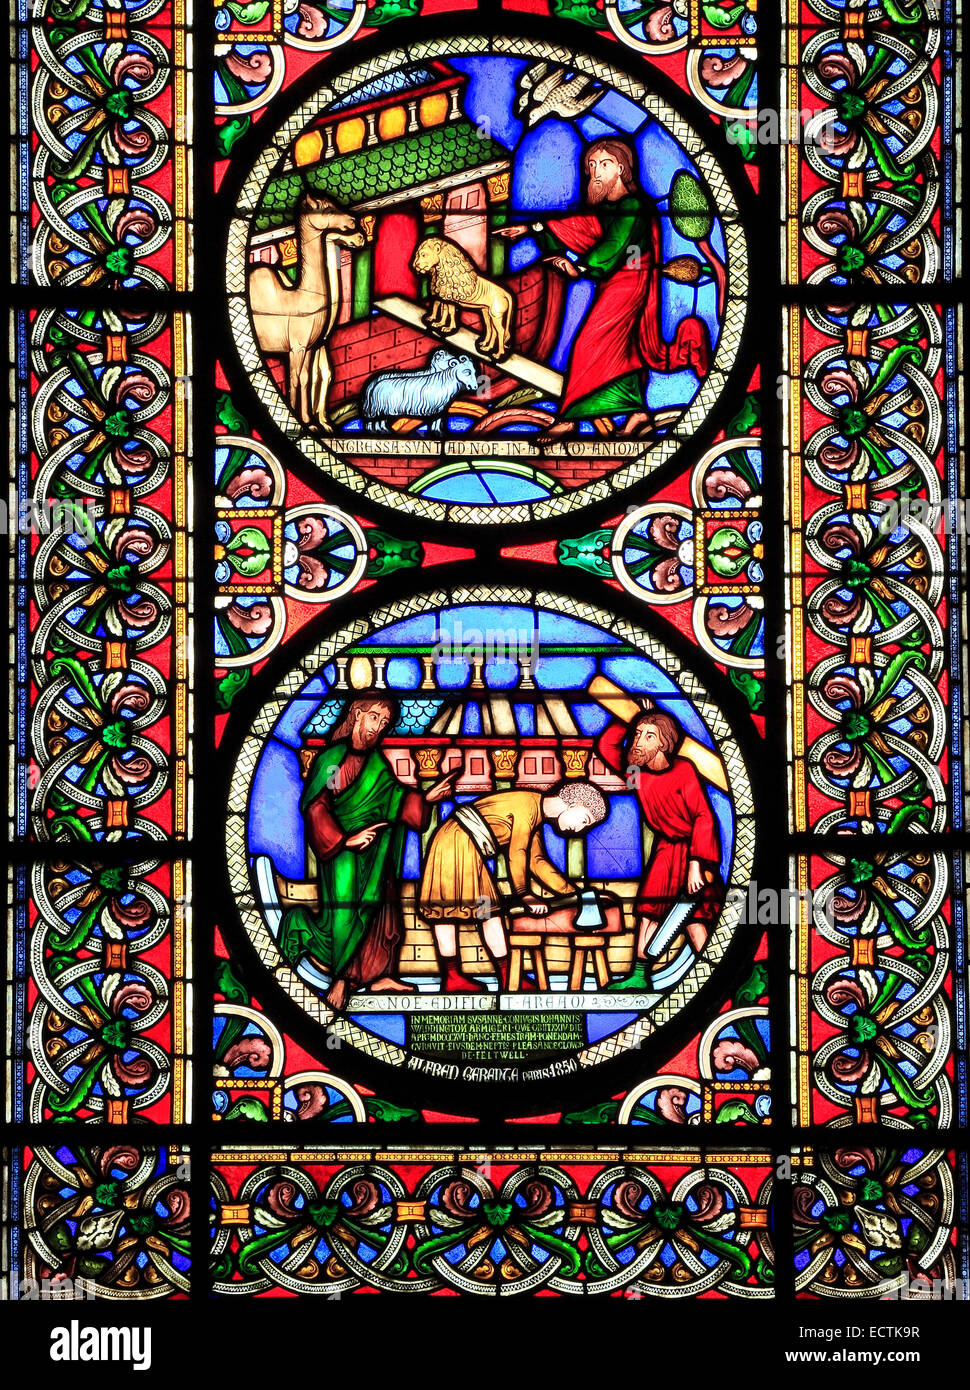 Vidriera, el Arca de Noé, construyendo el ARCA, los animales van de dos en dos, por Alfred Gerente de París de 1849, la catedral de Ely Foto de stock